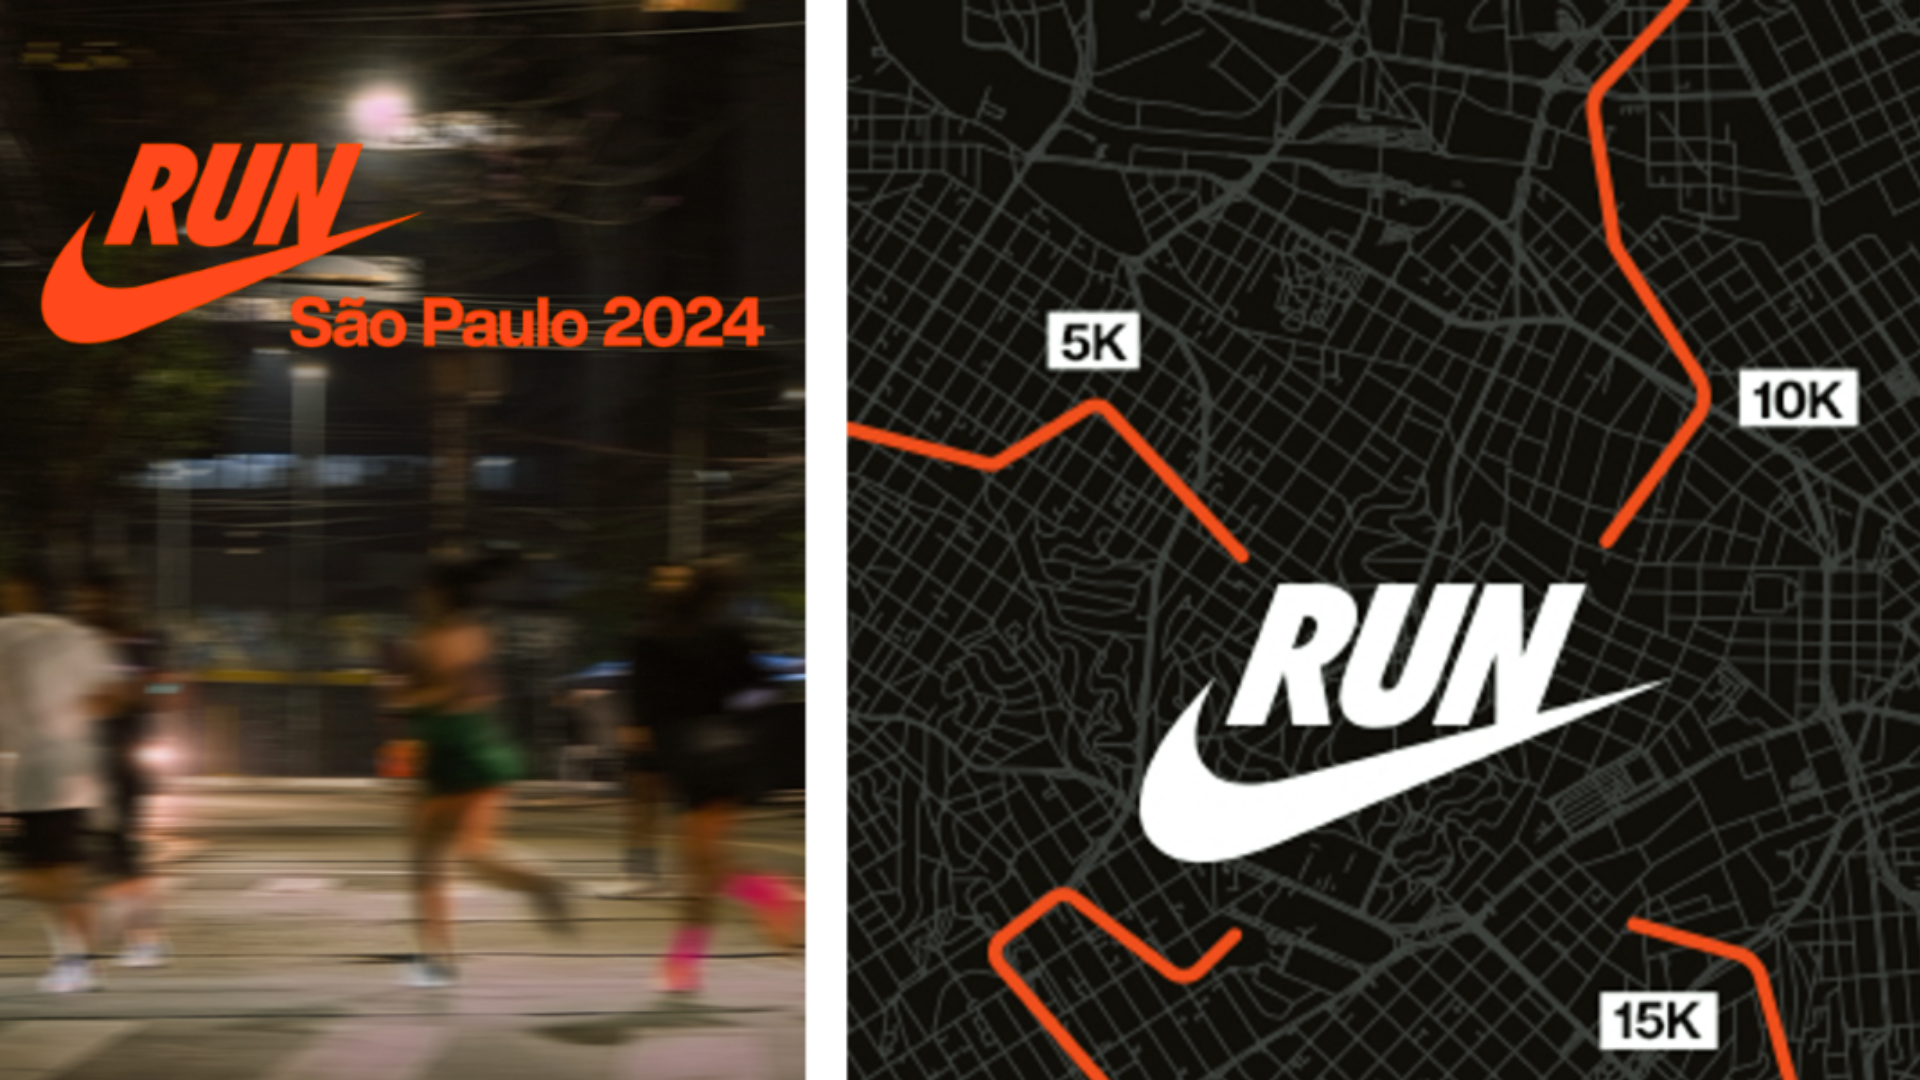 Nike São Paulo Run retorna em 2024 com novo formato e múltiplos pontos de largada